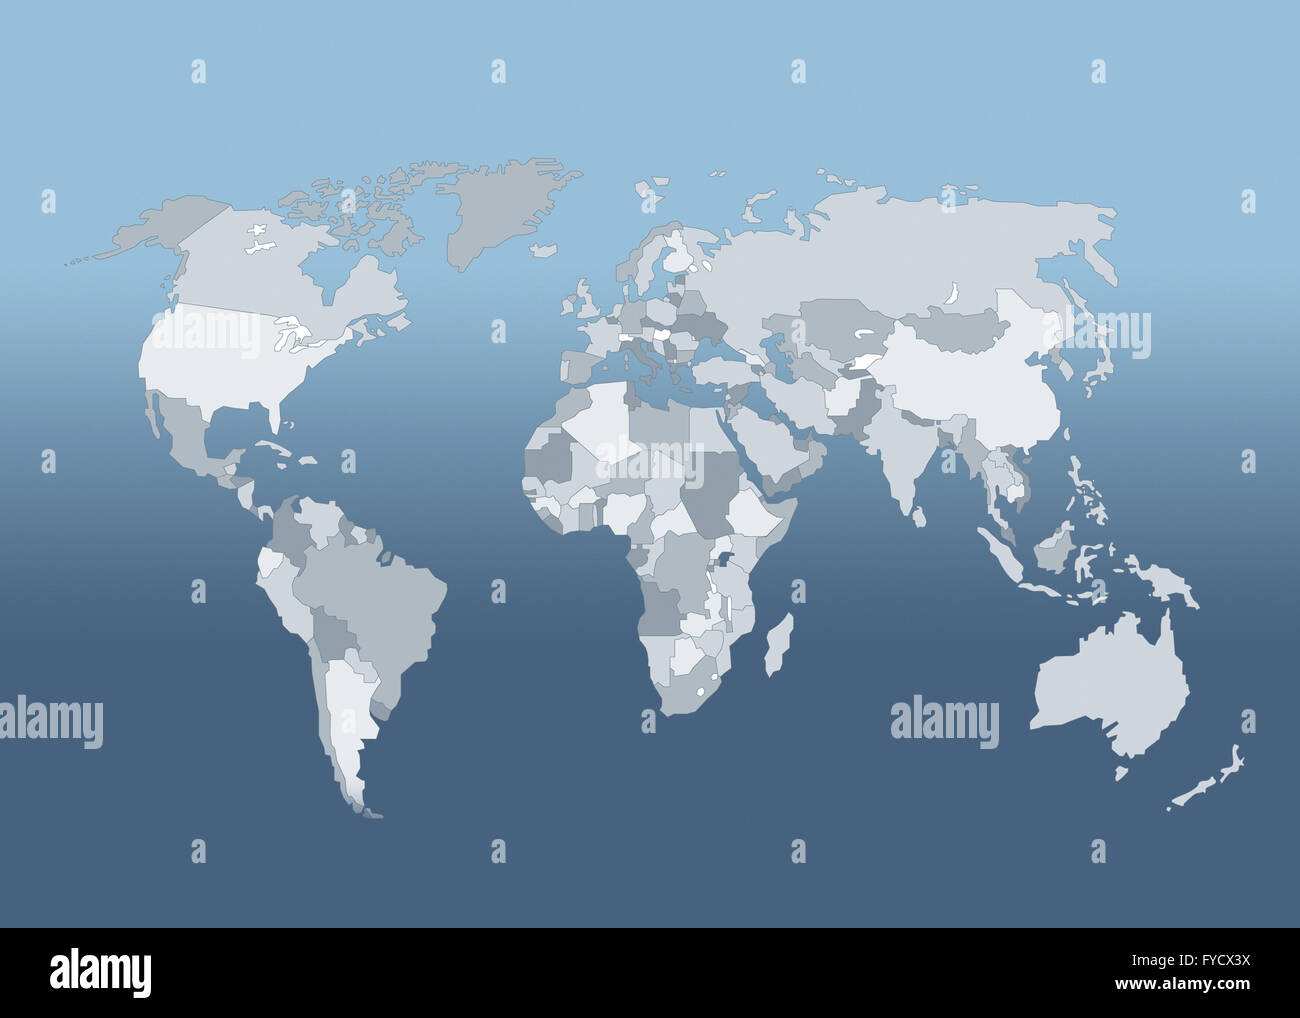 Welt Karte Weltkarte mit Staaten Stockfoto